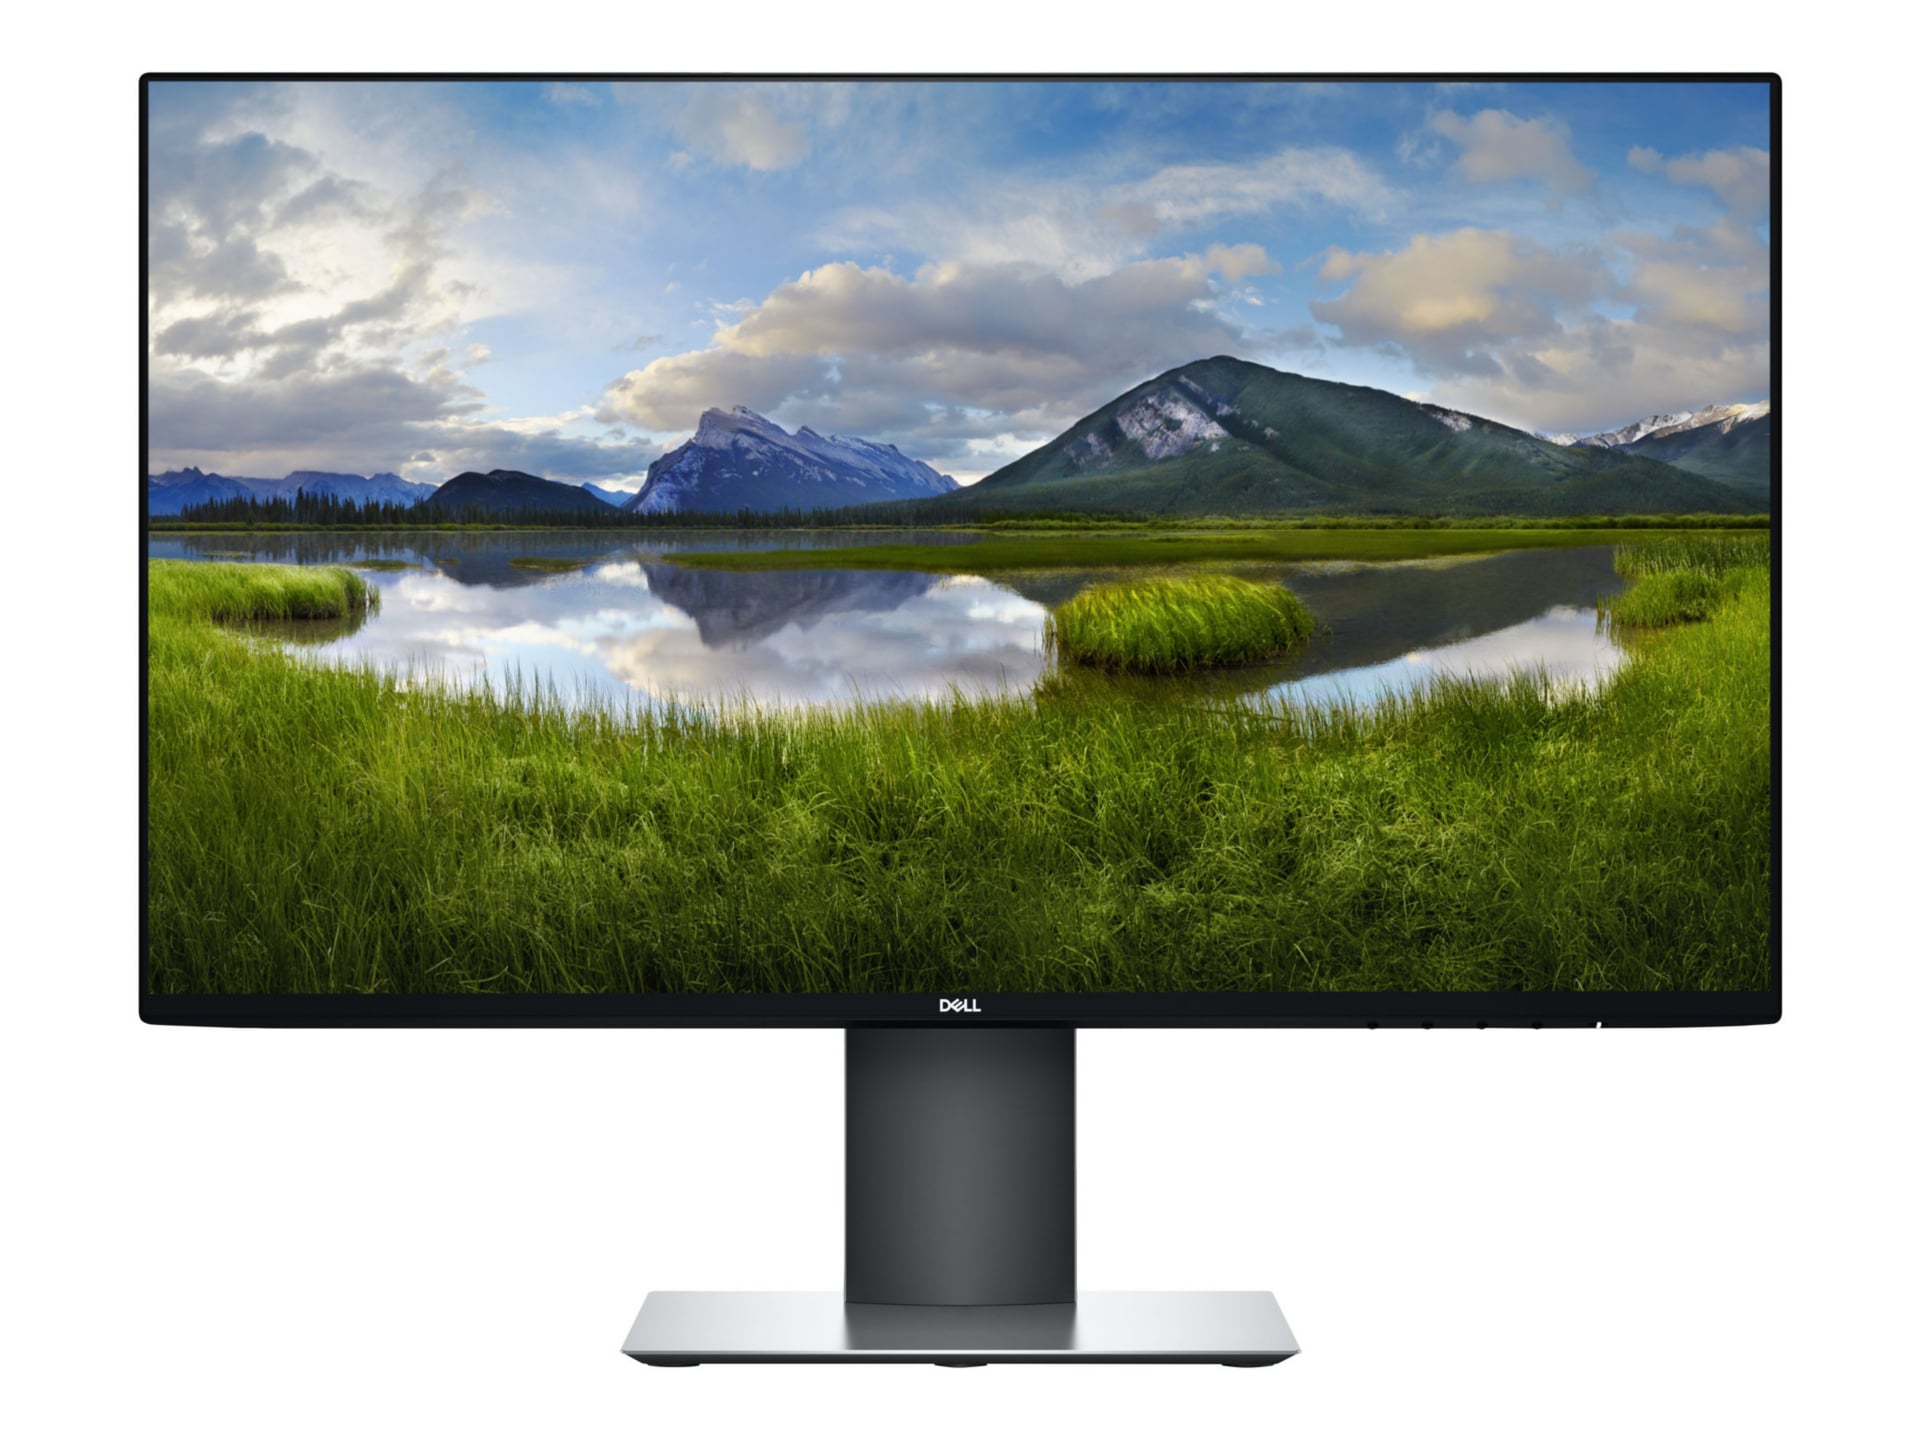 Dell UltraSharp U2419HC - LED monitor - Full HD (1080p) - 24"